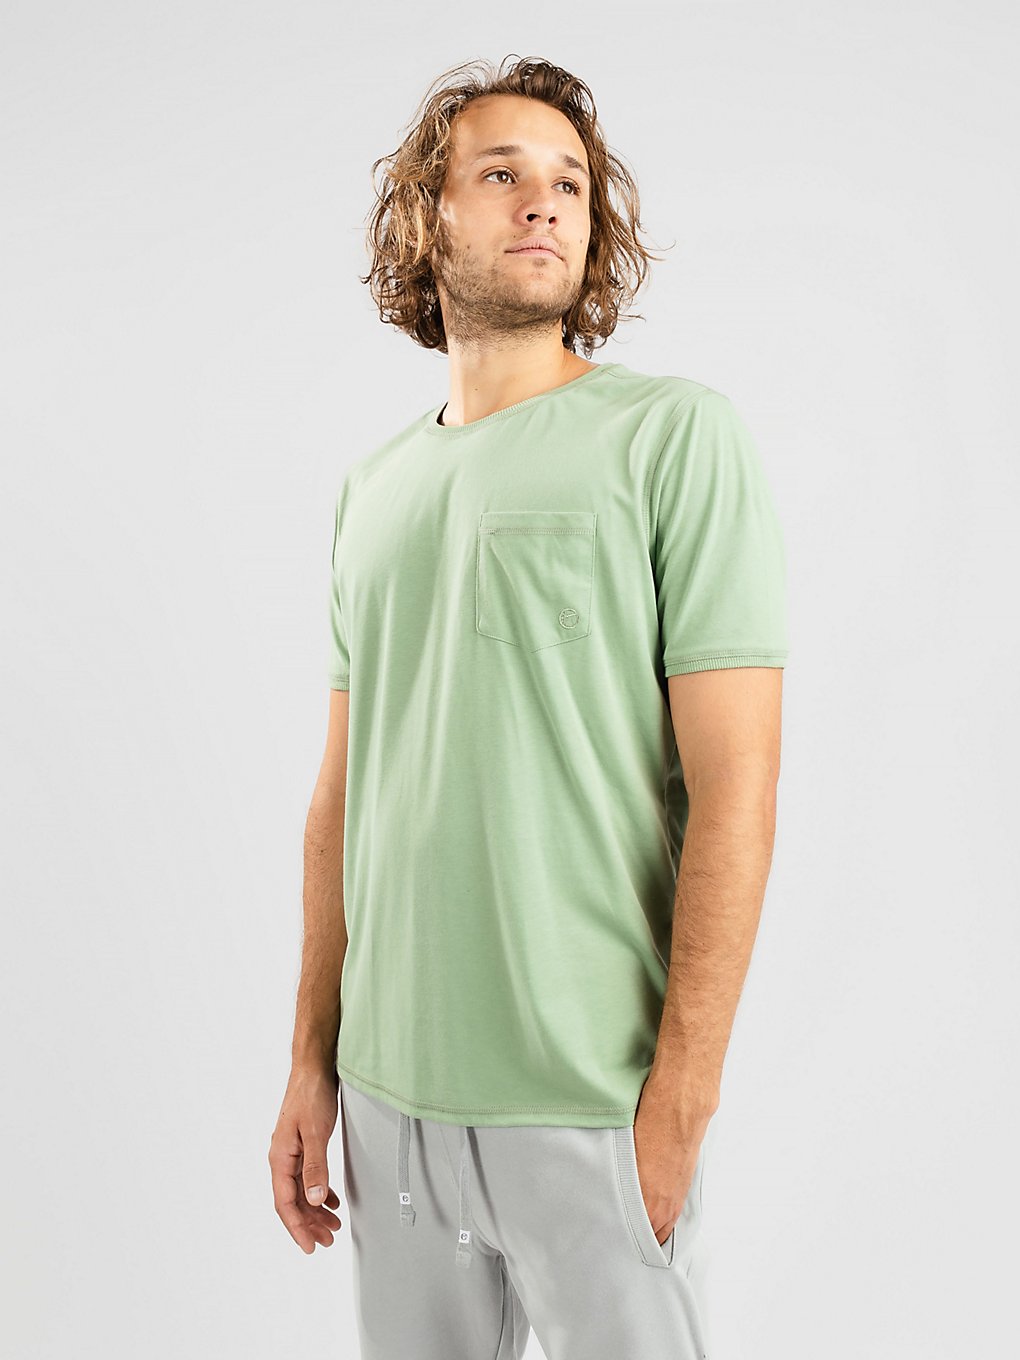 Kazane Moss T-Shirt groen